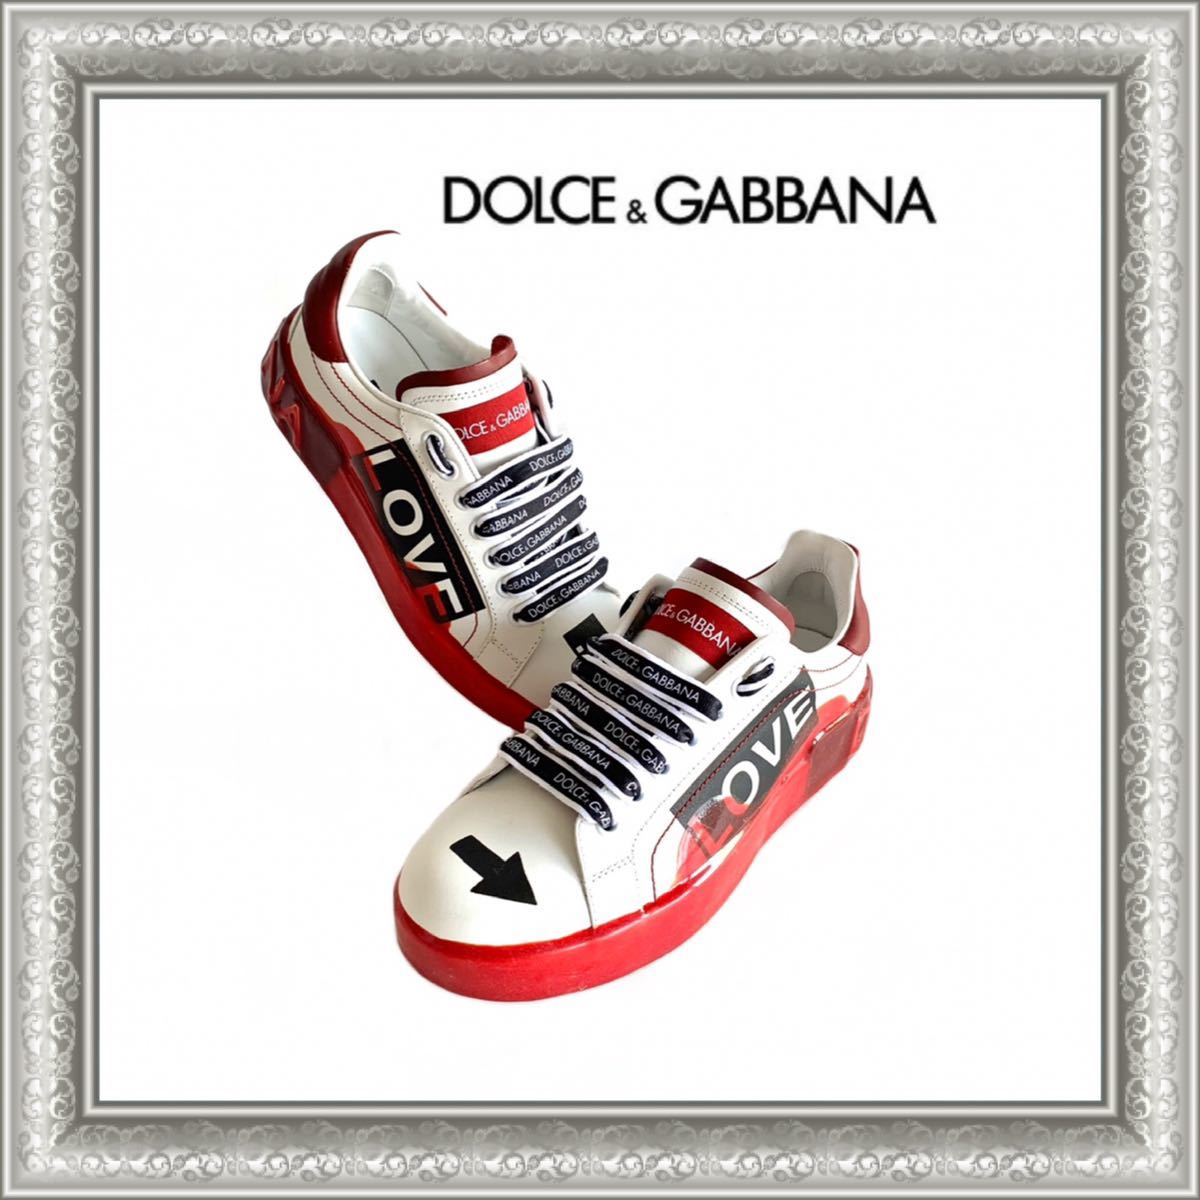 【在庫限り】 値下げしましたドルチェ&ガッパーナ★スニーカー未使用品Dolce&Gabbana スニーカー